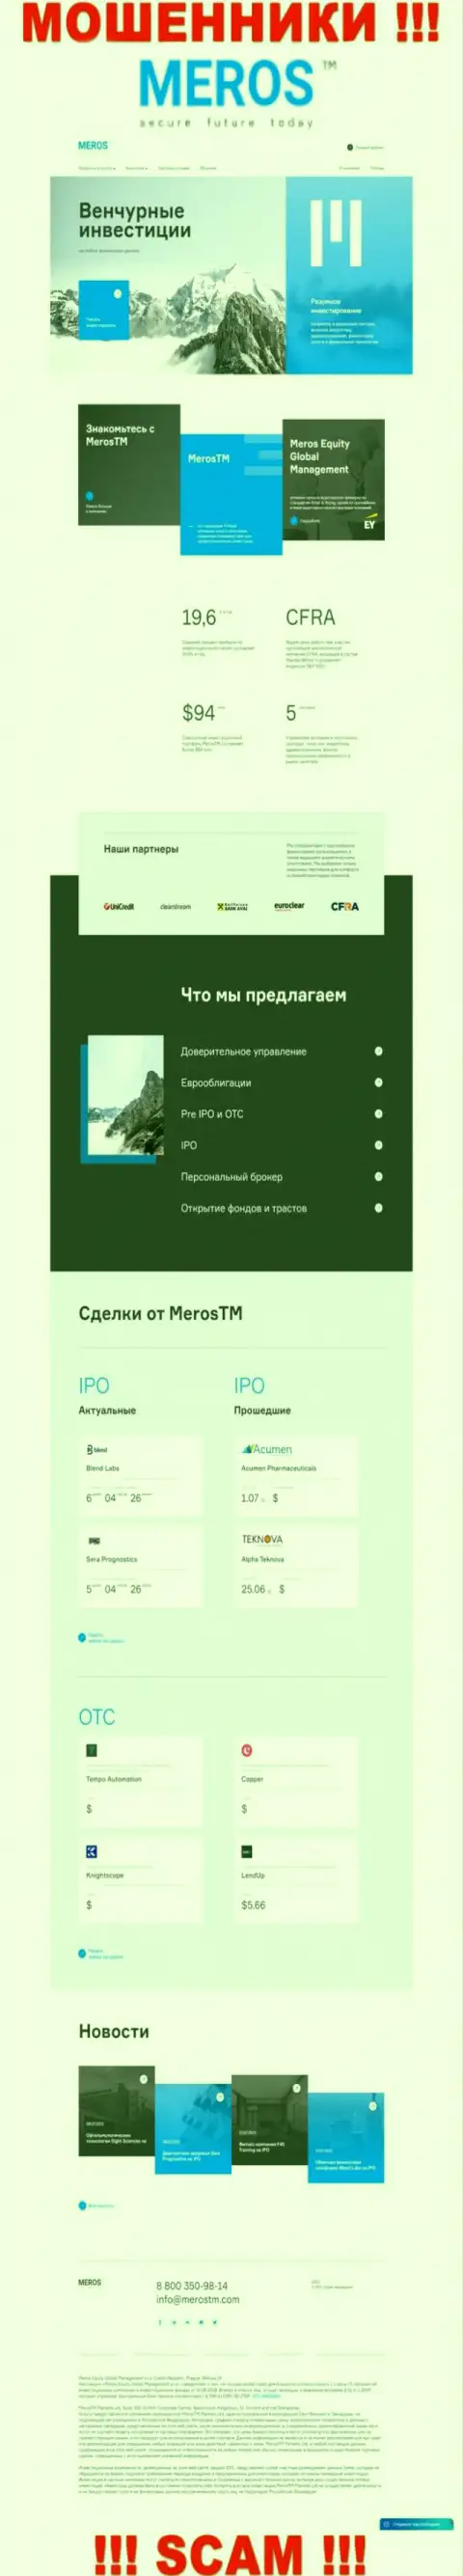 Разбор официального сервиса мошенников Мерос ТМ